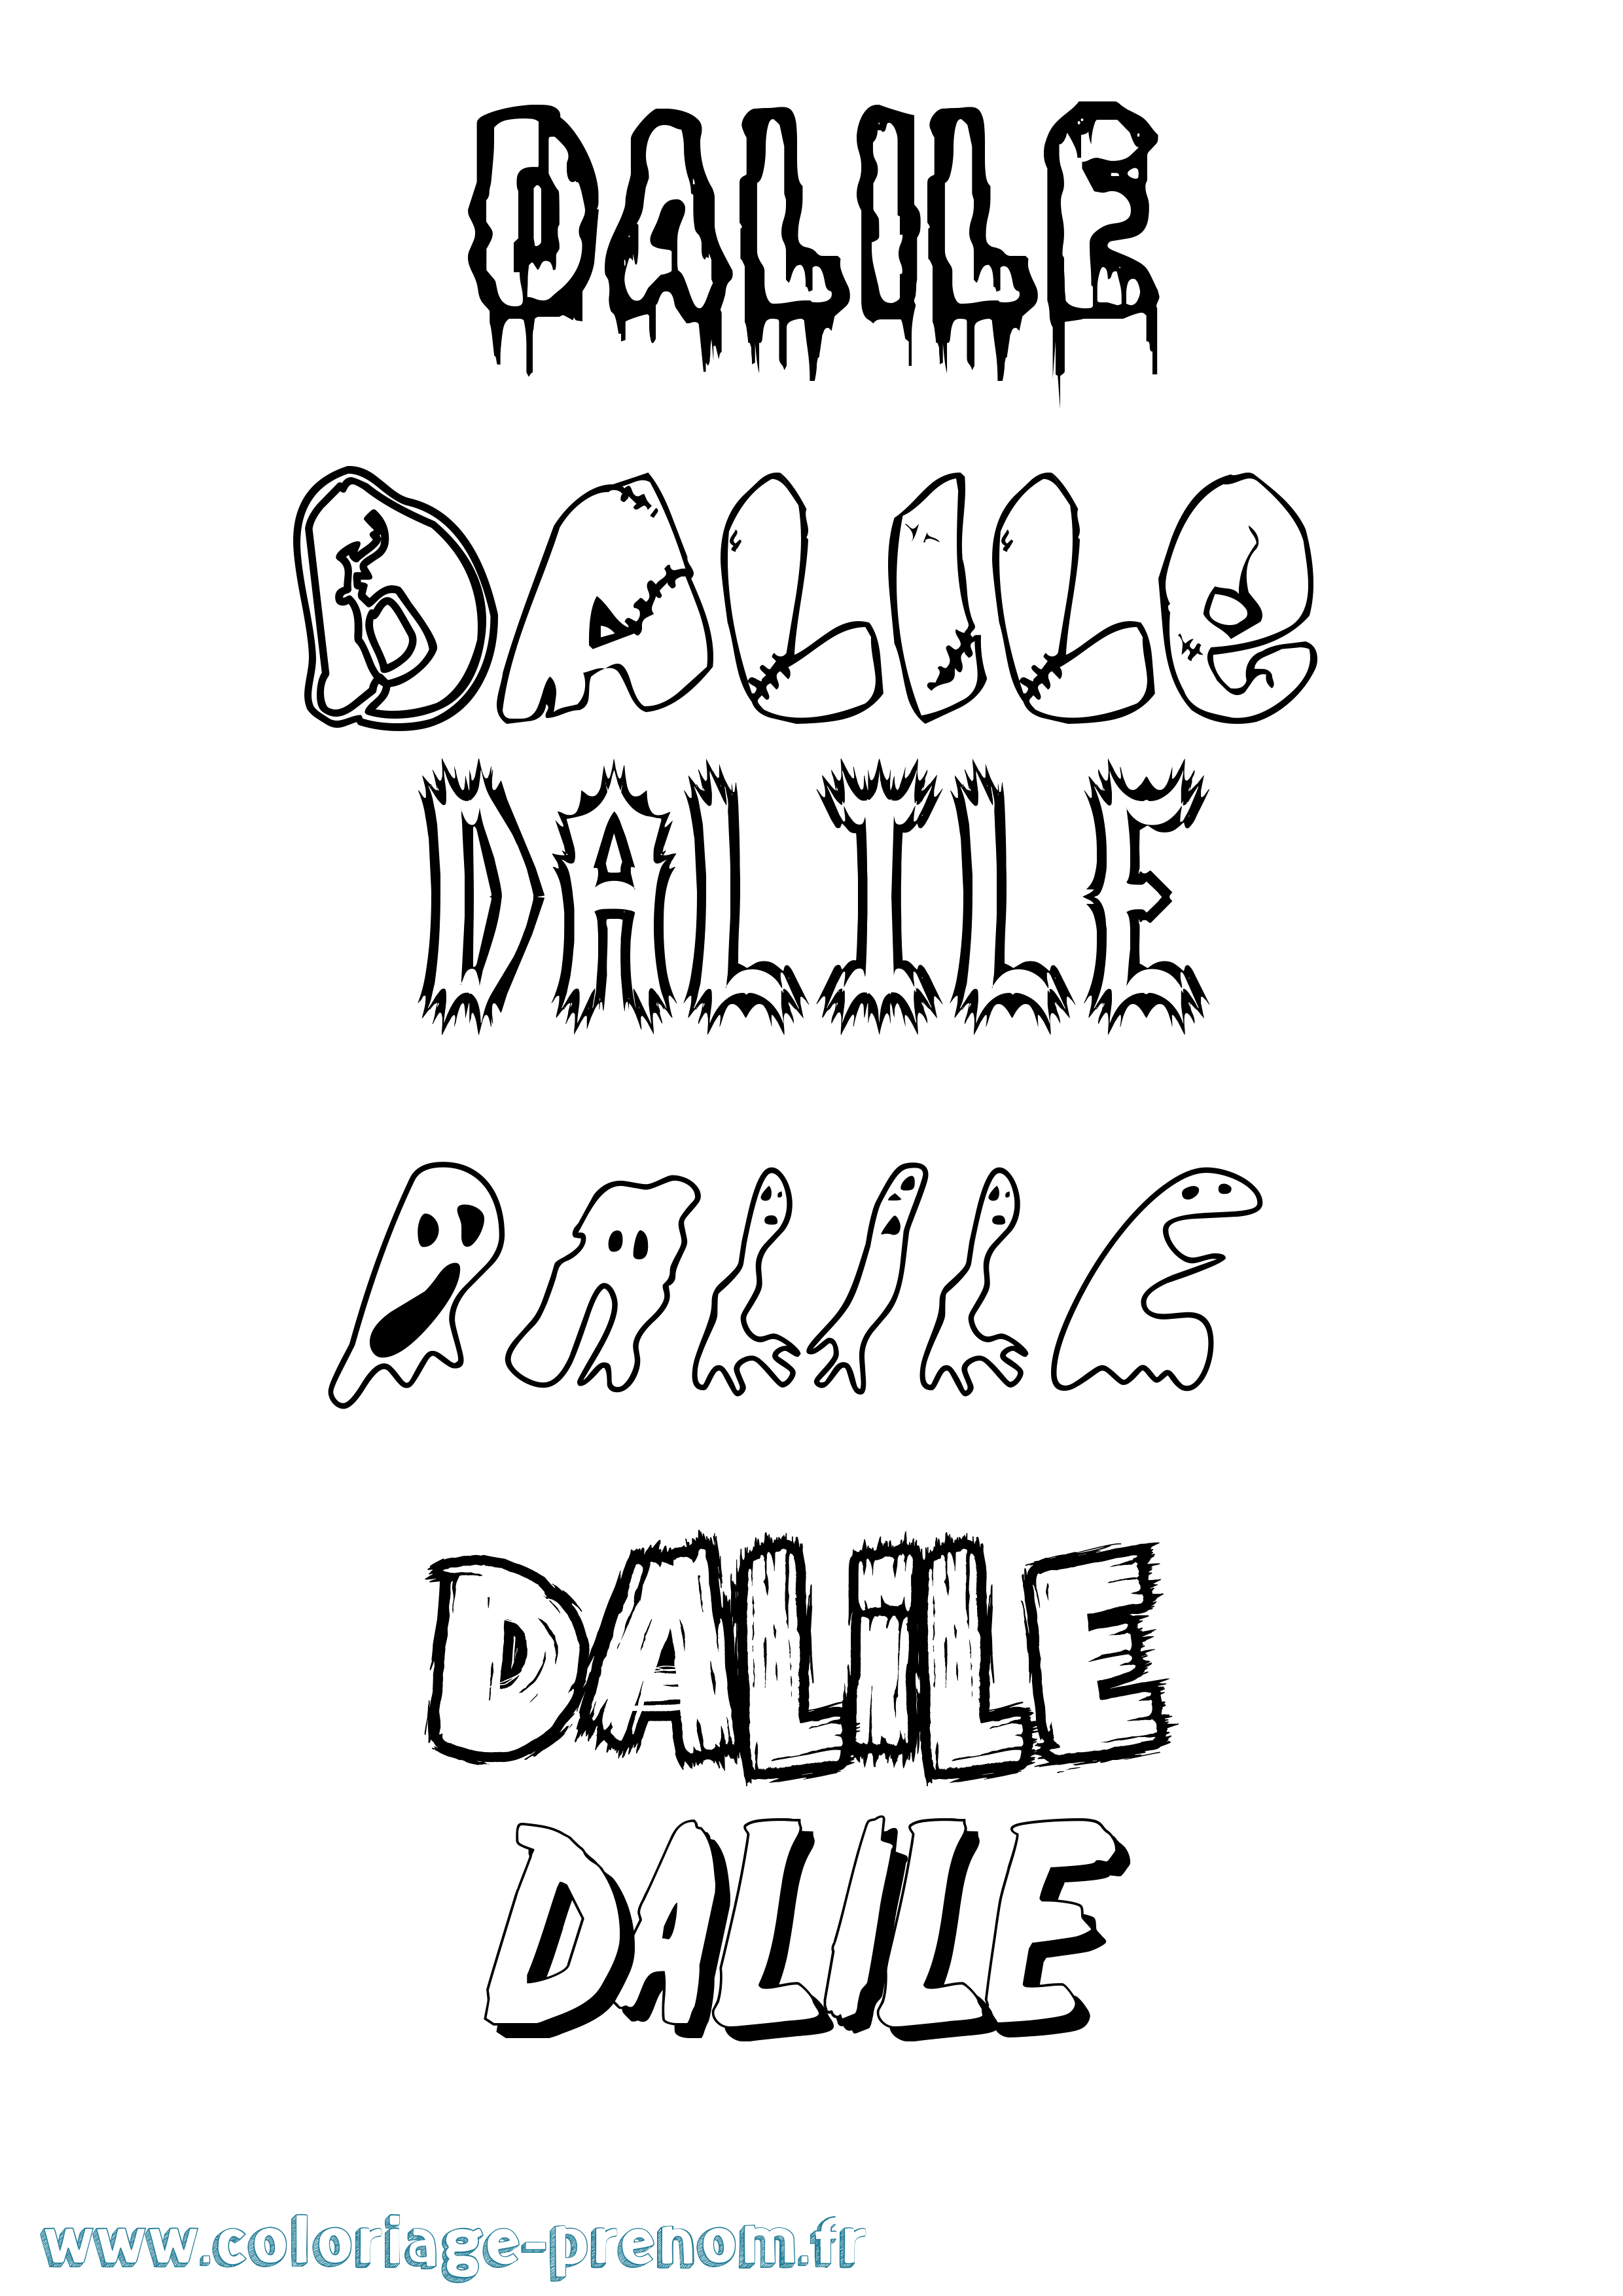 Coloriage prénom Dalile Frisson